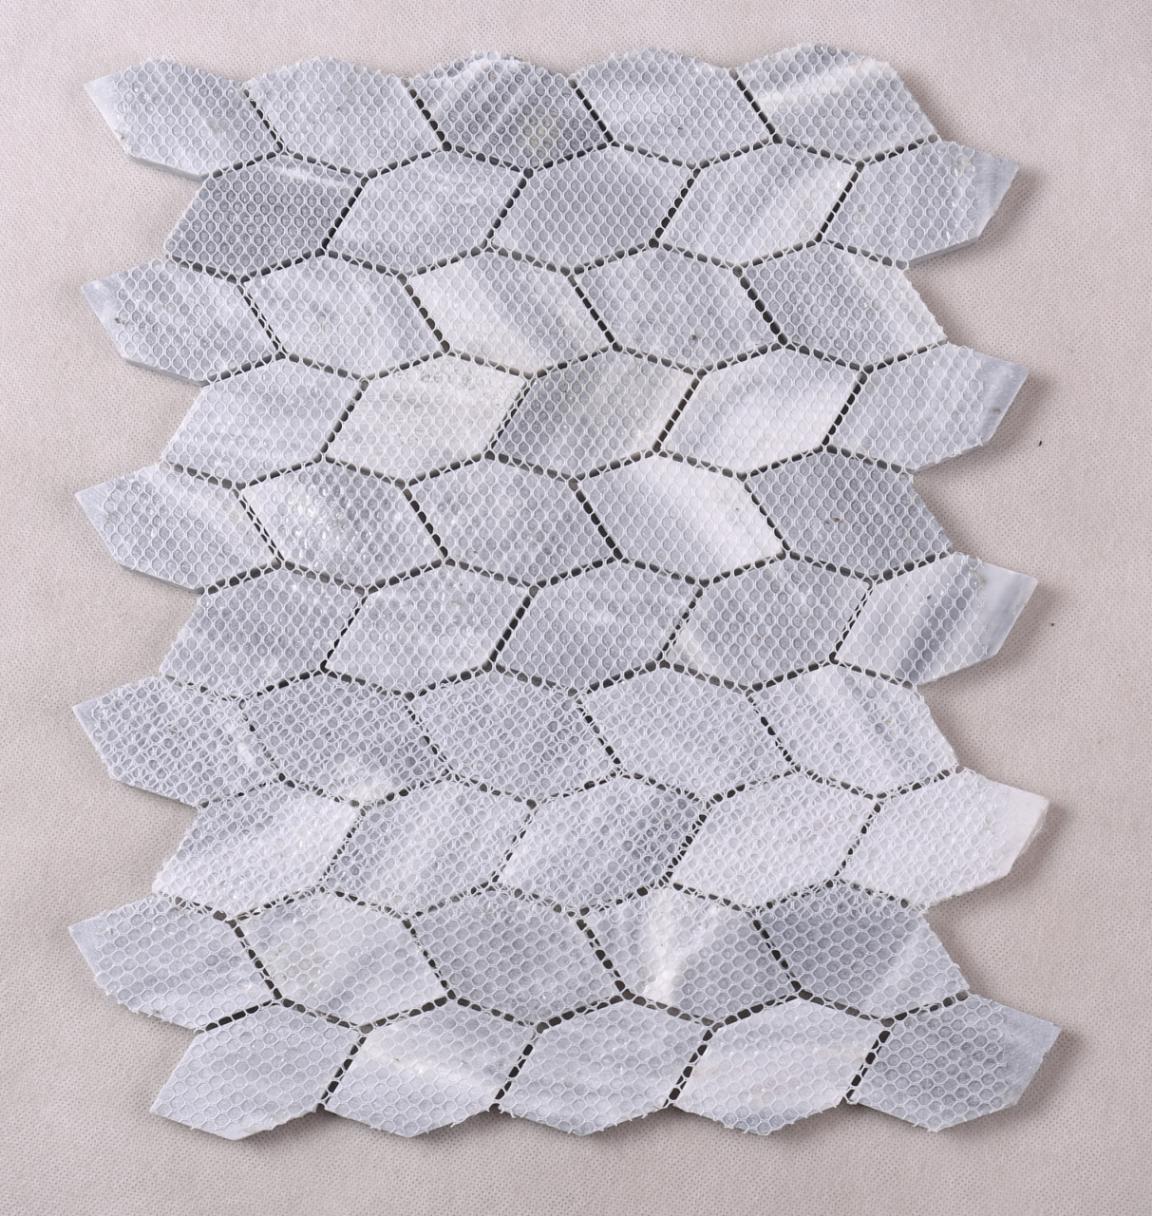 HSC137 Classic Grey Color Leaf Shape Stone Mosaic Floor Tile